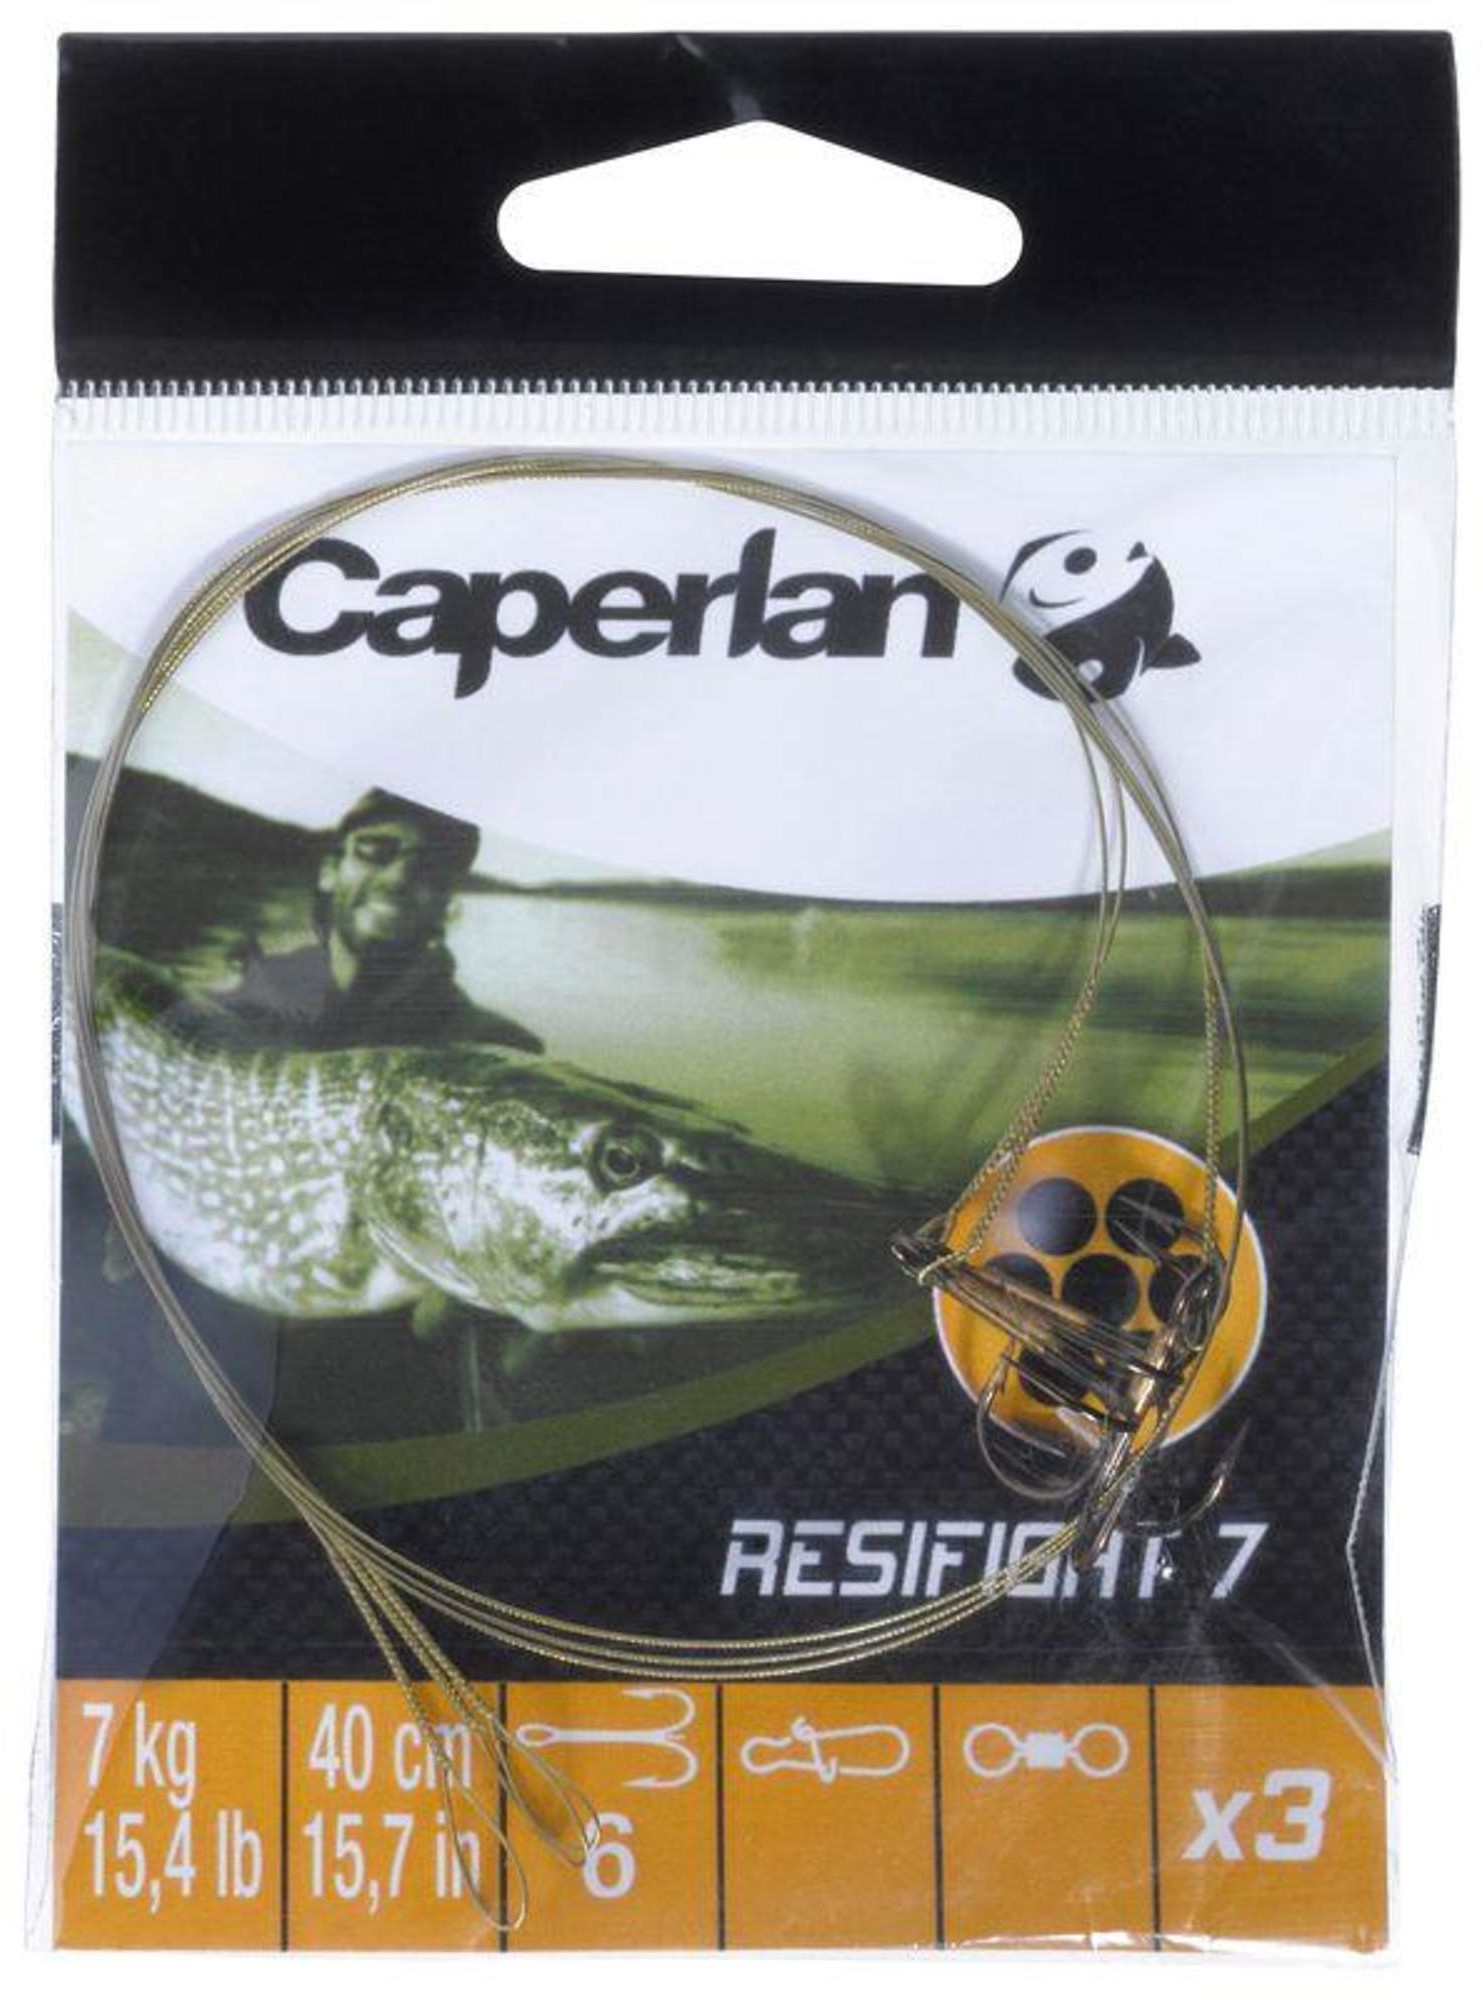 Zdjęcia - Pozostały sprzęt wędkarski Caperlan Przypon na drapieżniki Resifight 7 kotwiczka trójramienna 7 kg x 3 